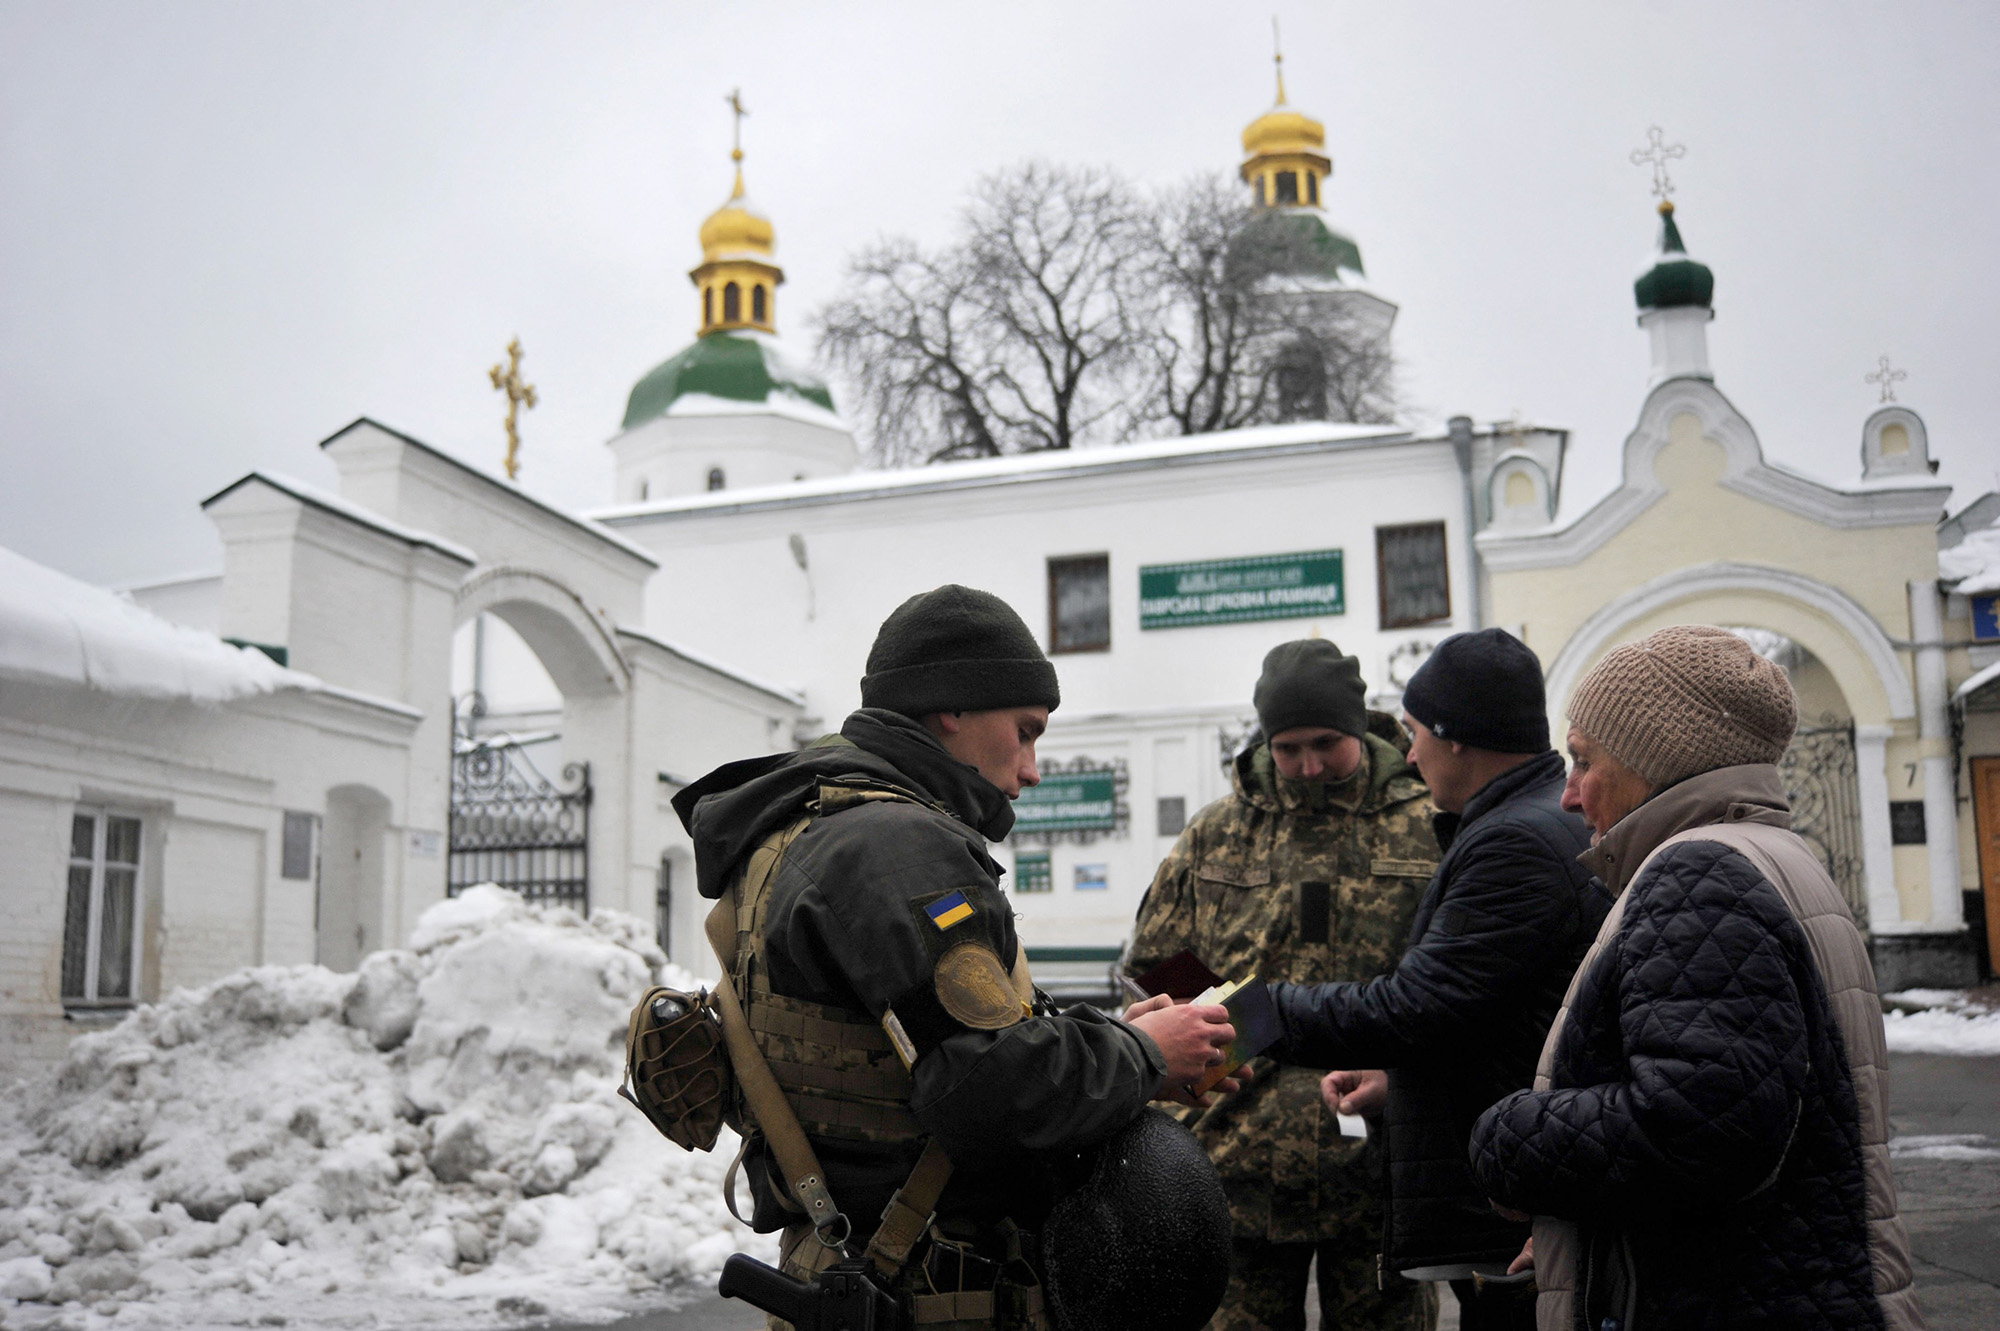 جنود خدمة الأمن الأوكرانية (SBU) يفحصون وثائق زوار دير كييف بيشيرسك لافرا في كييف في 22 نوفمبر.